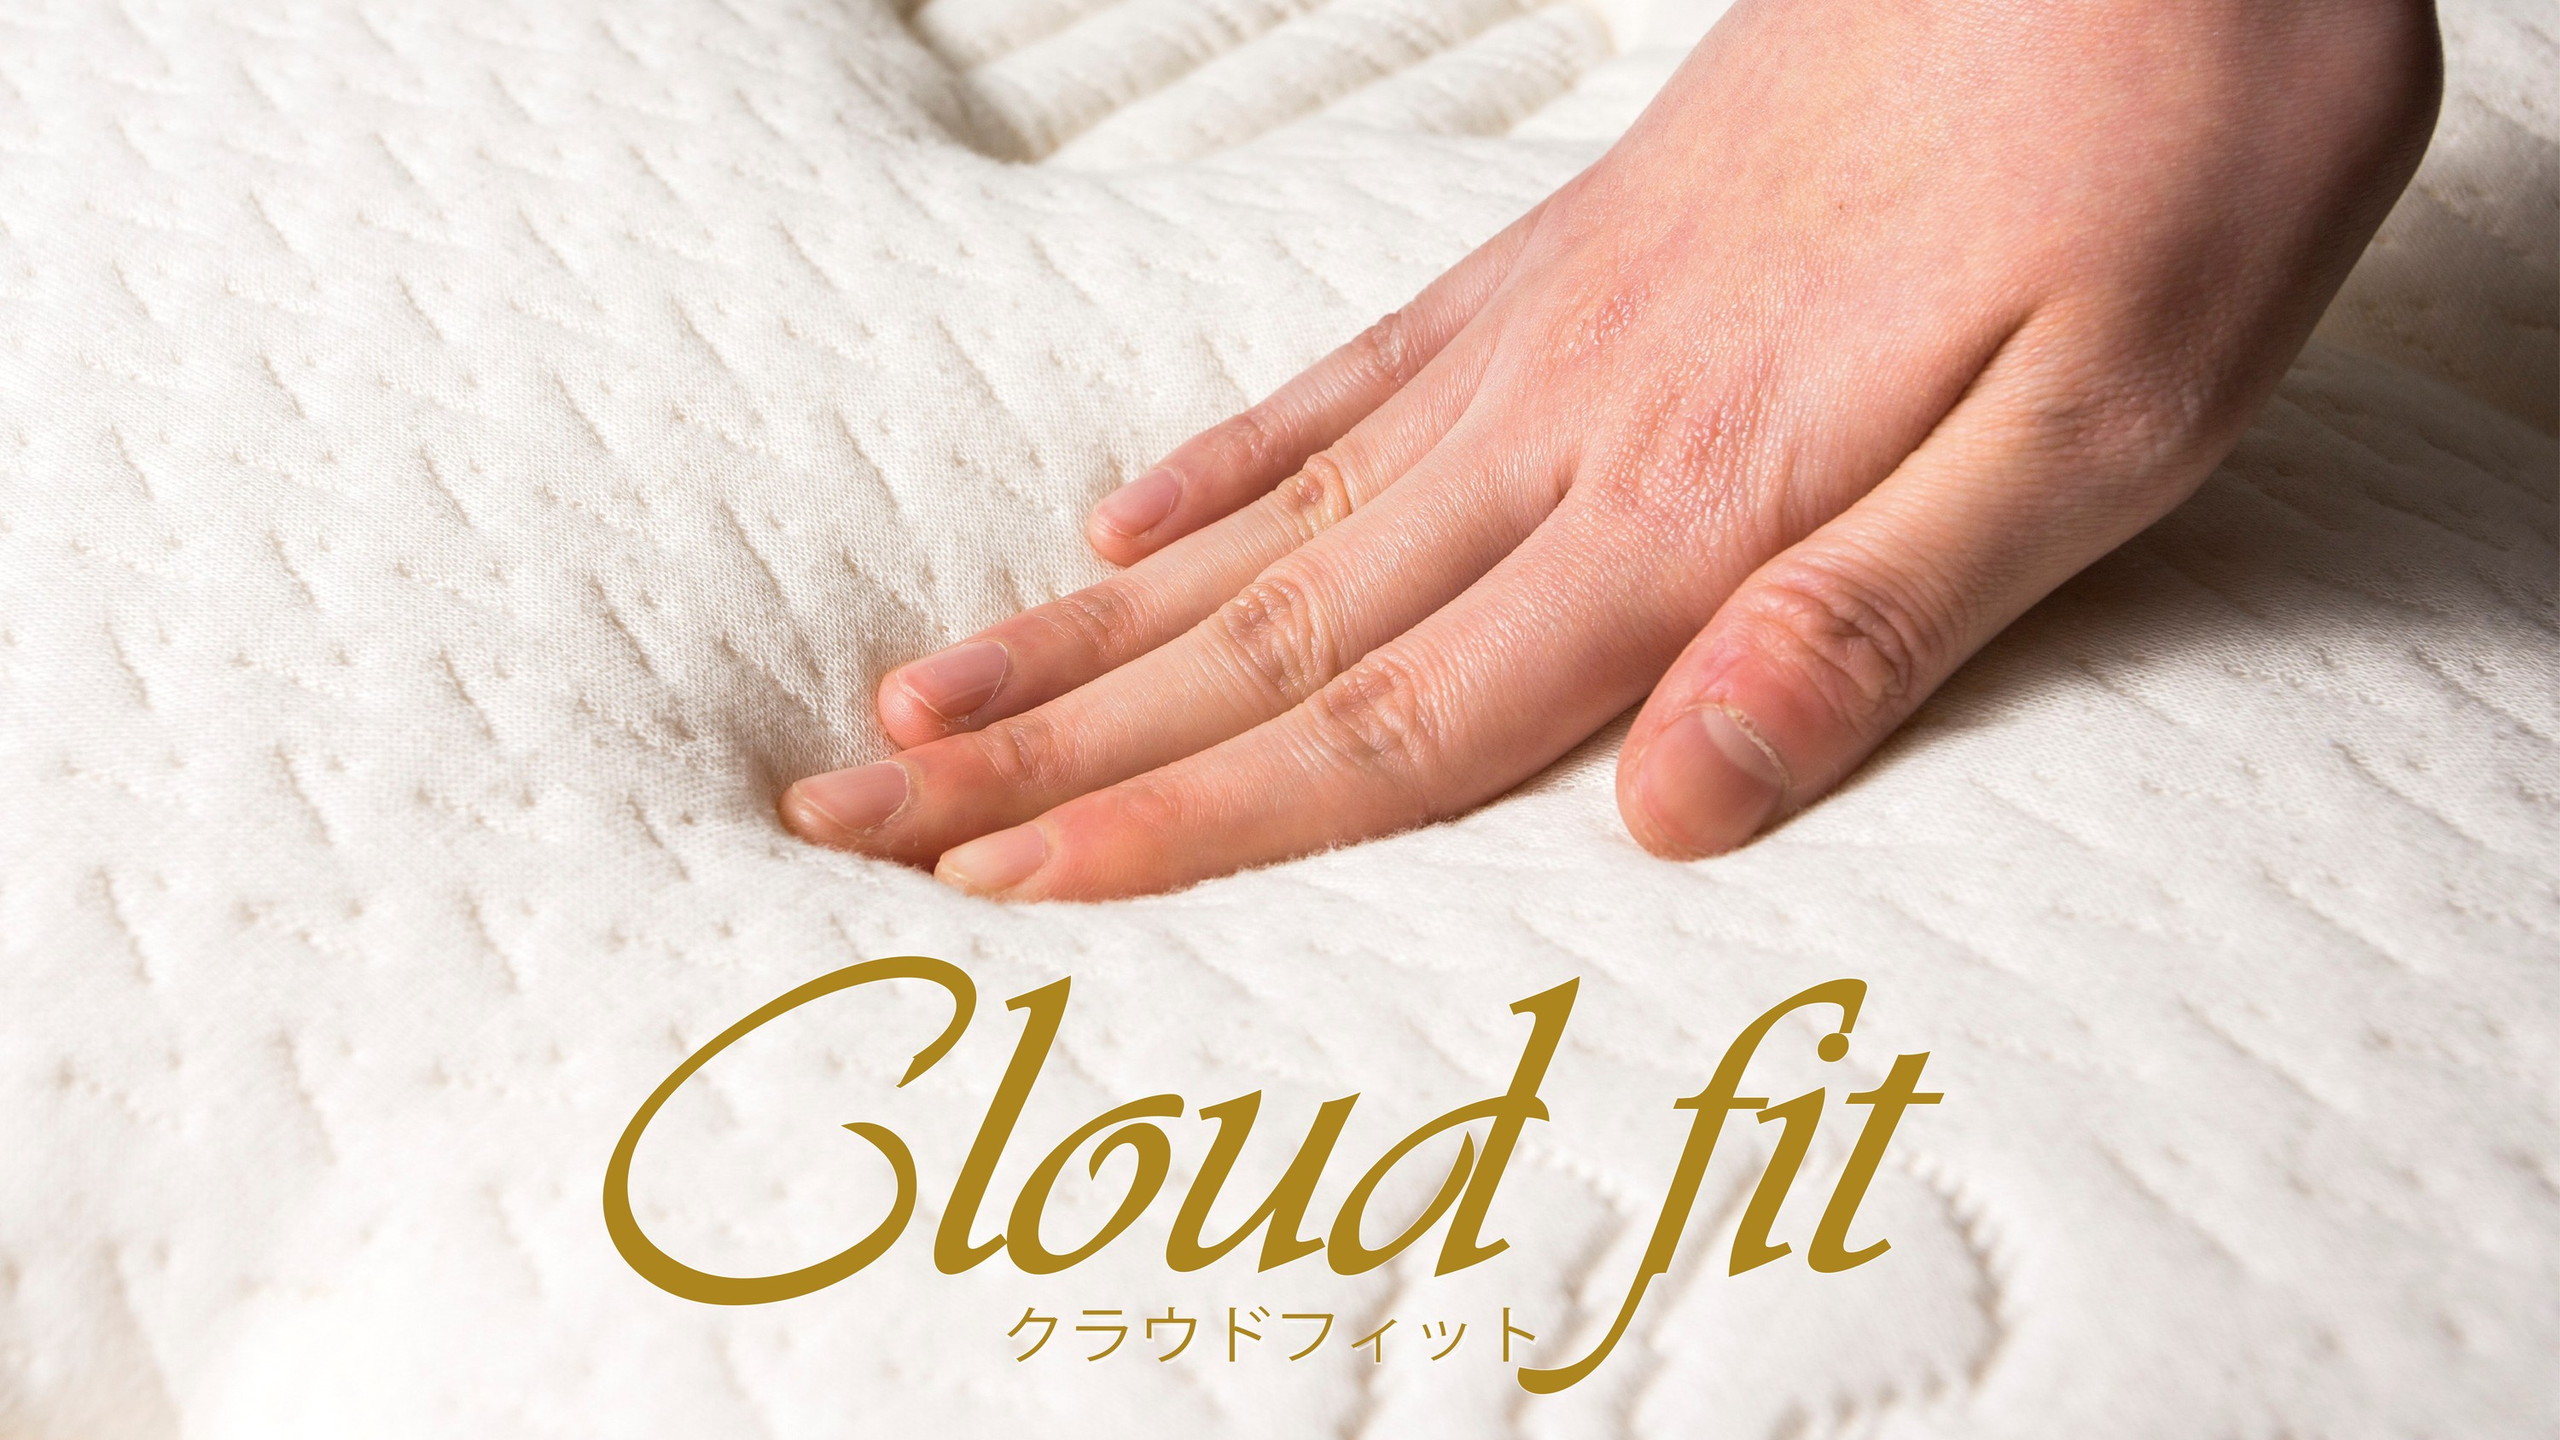 ■「Cloud fit(クラウドフィット)」